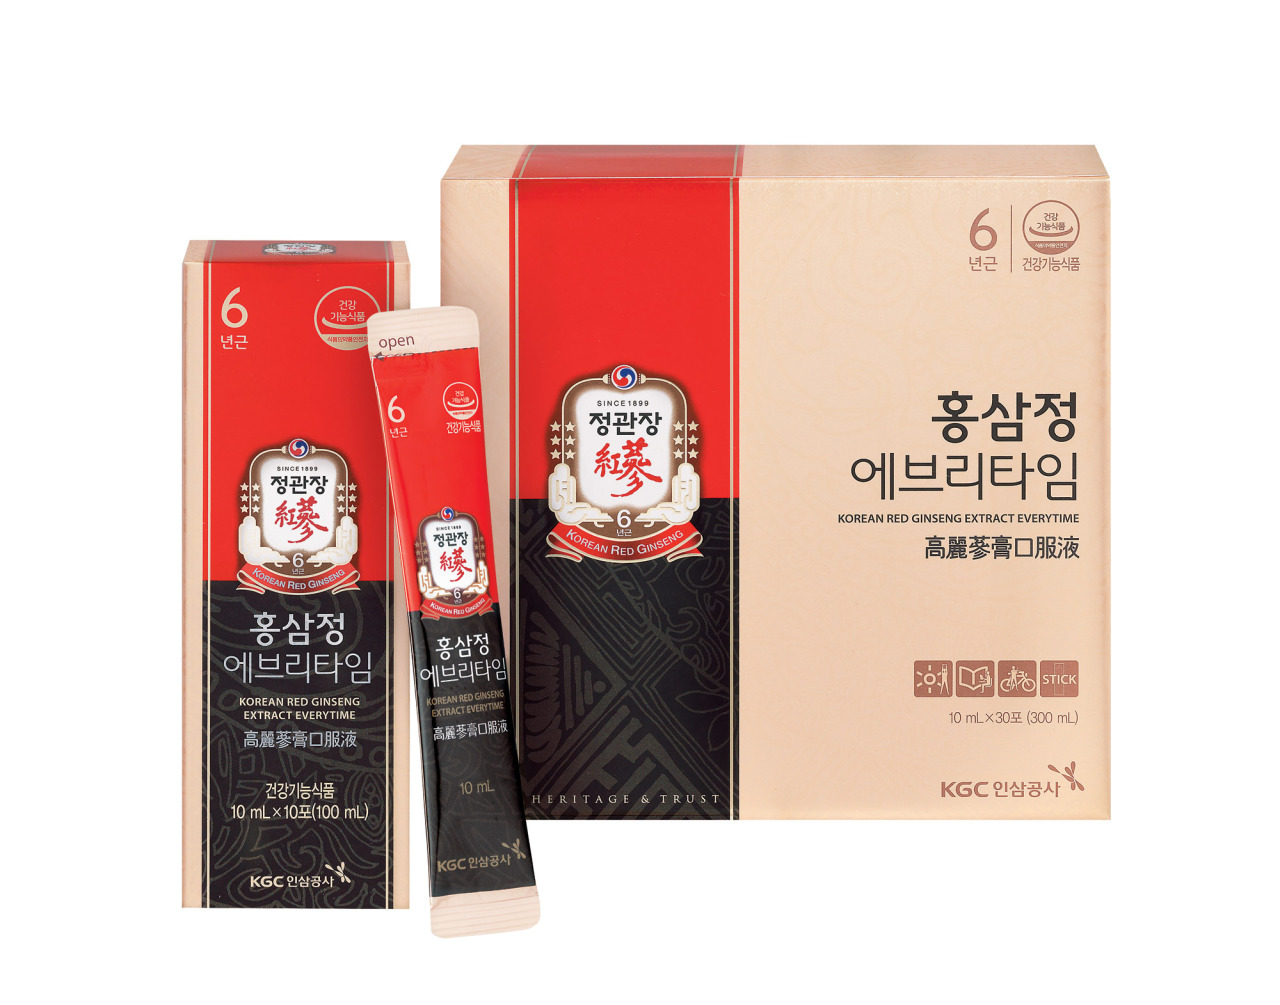 CheongKwanJang’s Korean Red Ginseng Extract Everytime (KGC)